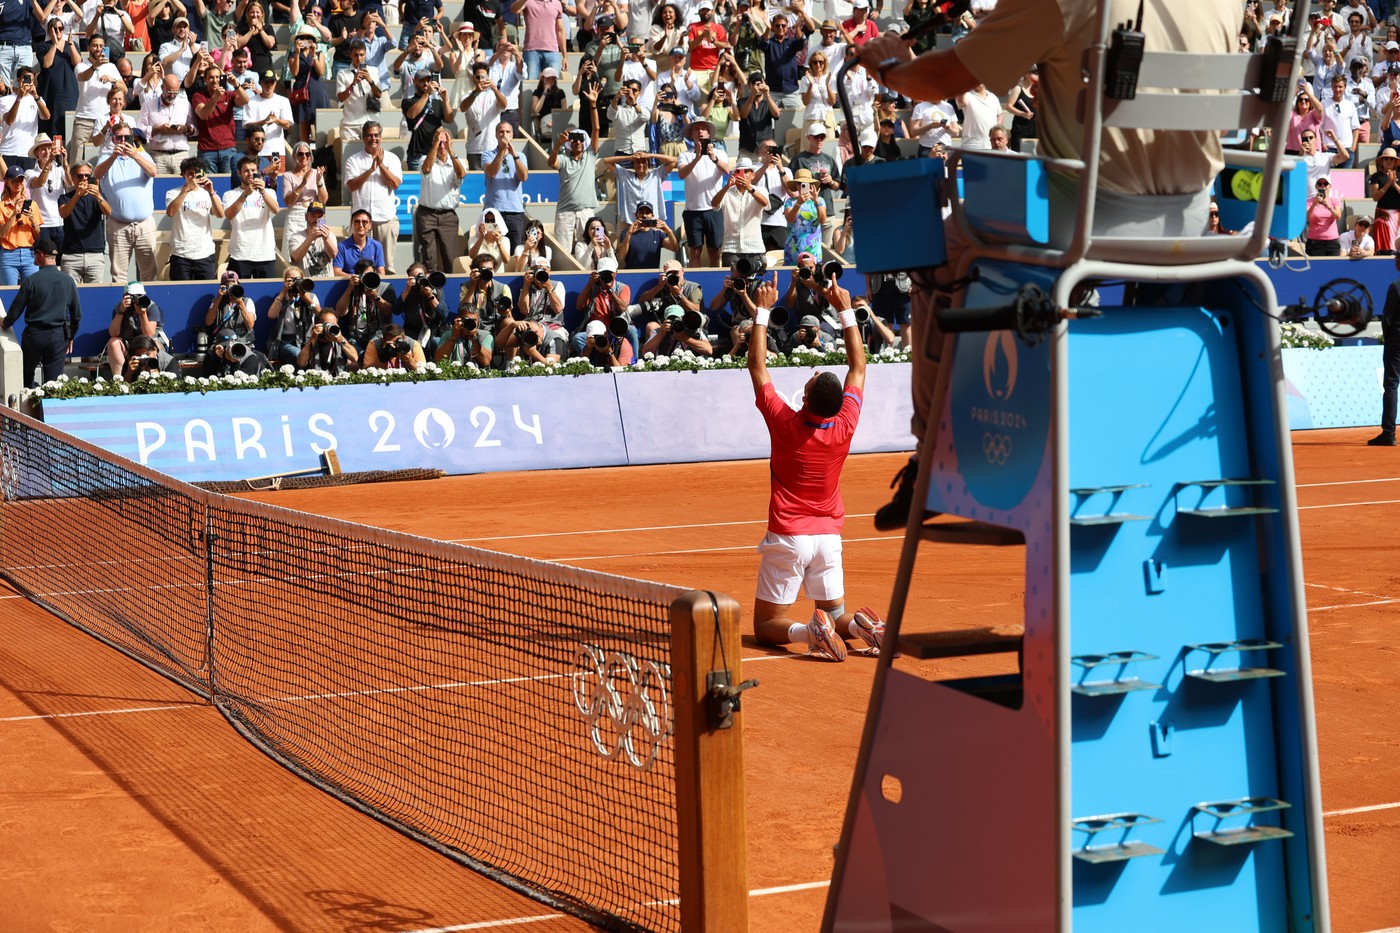 ”Sunt în stare de șoc”. Reacția lui Novak Djokovic, după ce a devenit campion olimpic